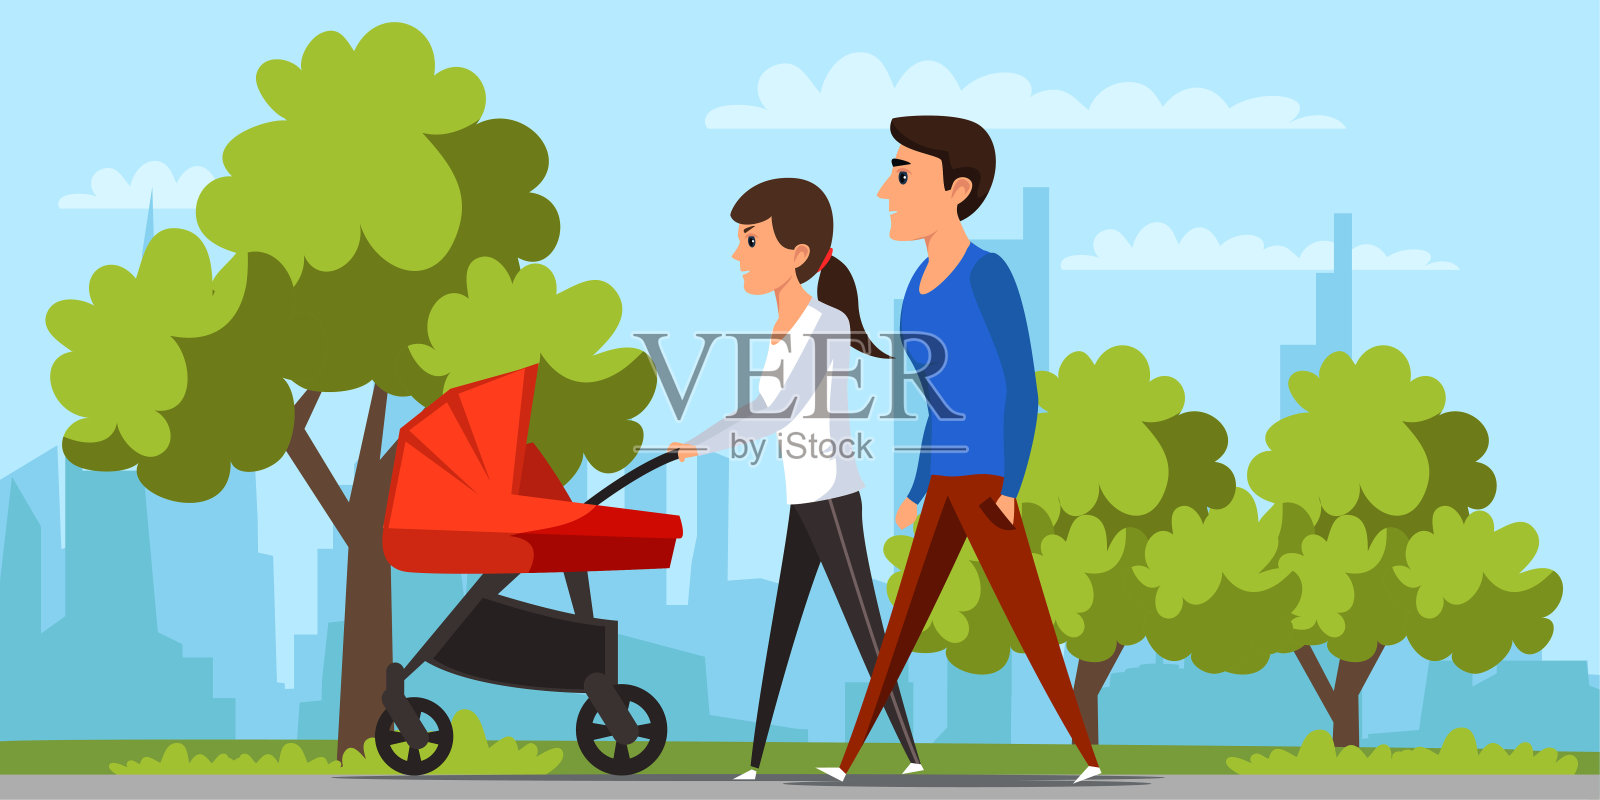 年轻情侣推着婴儿车散步-蓝牛仔影像-中国原创广告影像素材